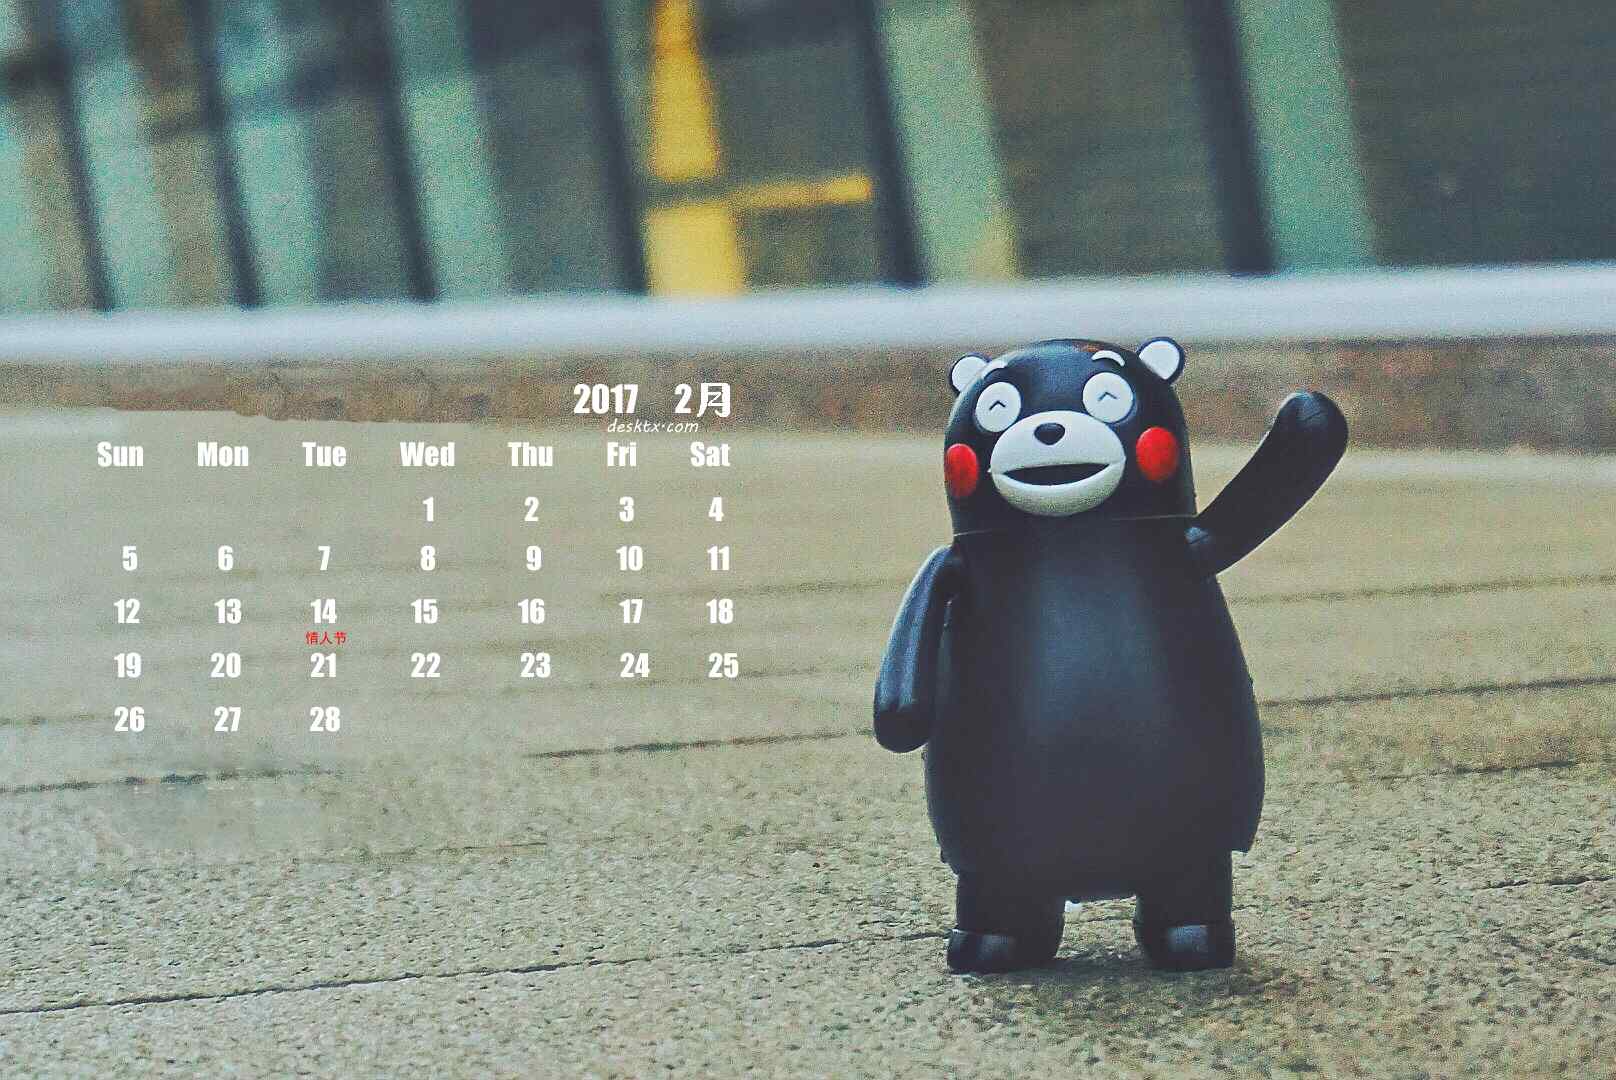 2017年2月日历壁纸之可爱的熊本熊